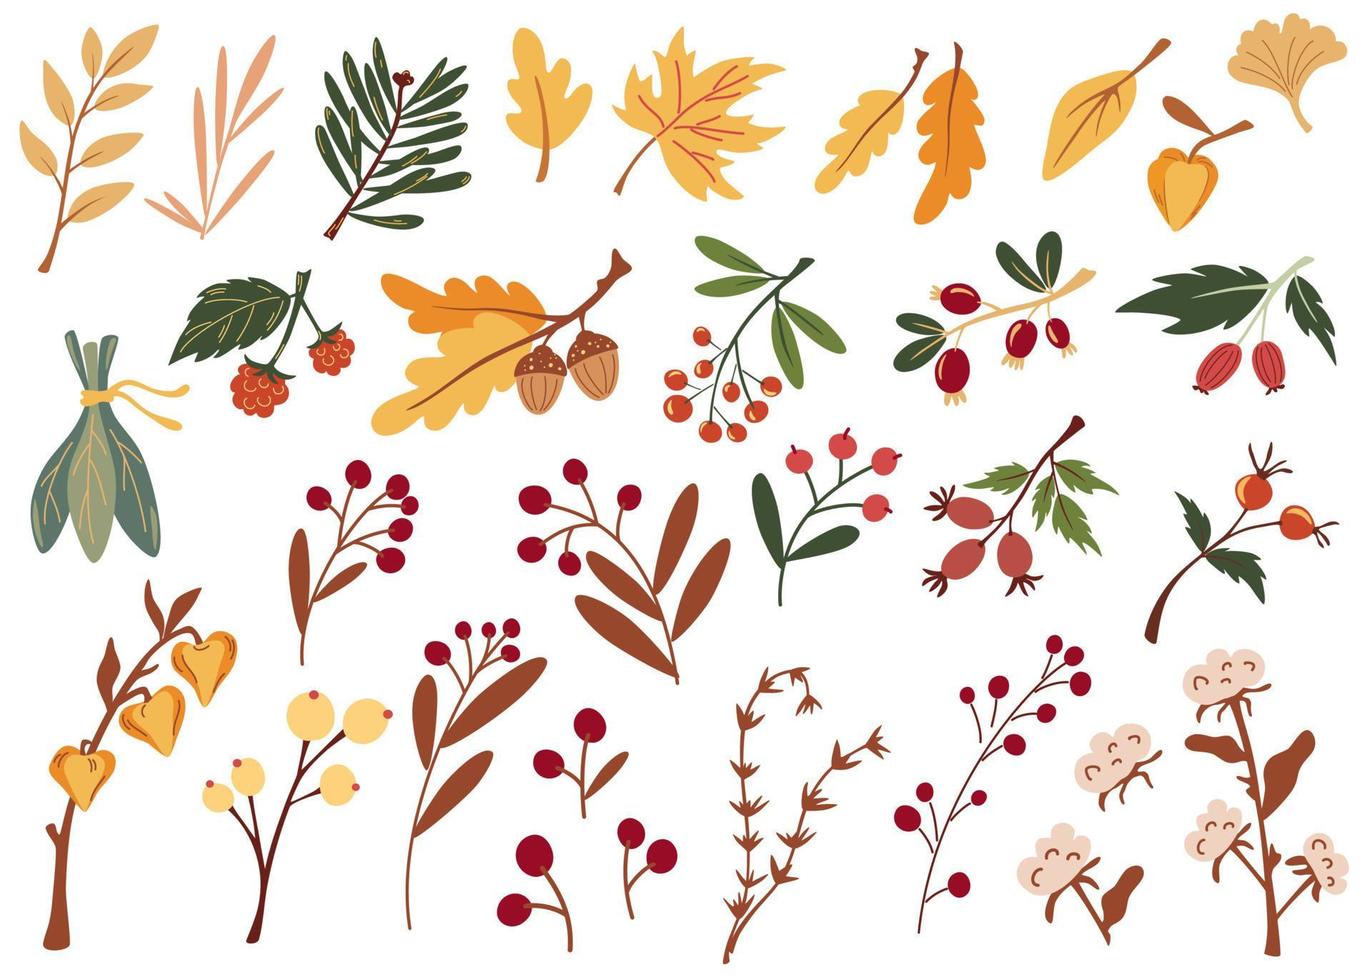 Herbstblätter und Beeren. Große Auswahl an verschiedenen Herbstblättern, Zweigen, Beeren und getrockneten Blumen. hand gezeichnete karikaturvektorillustration lokalisiert auf weißem hintergrund vektor